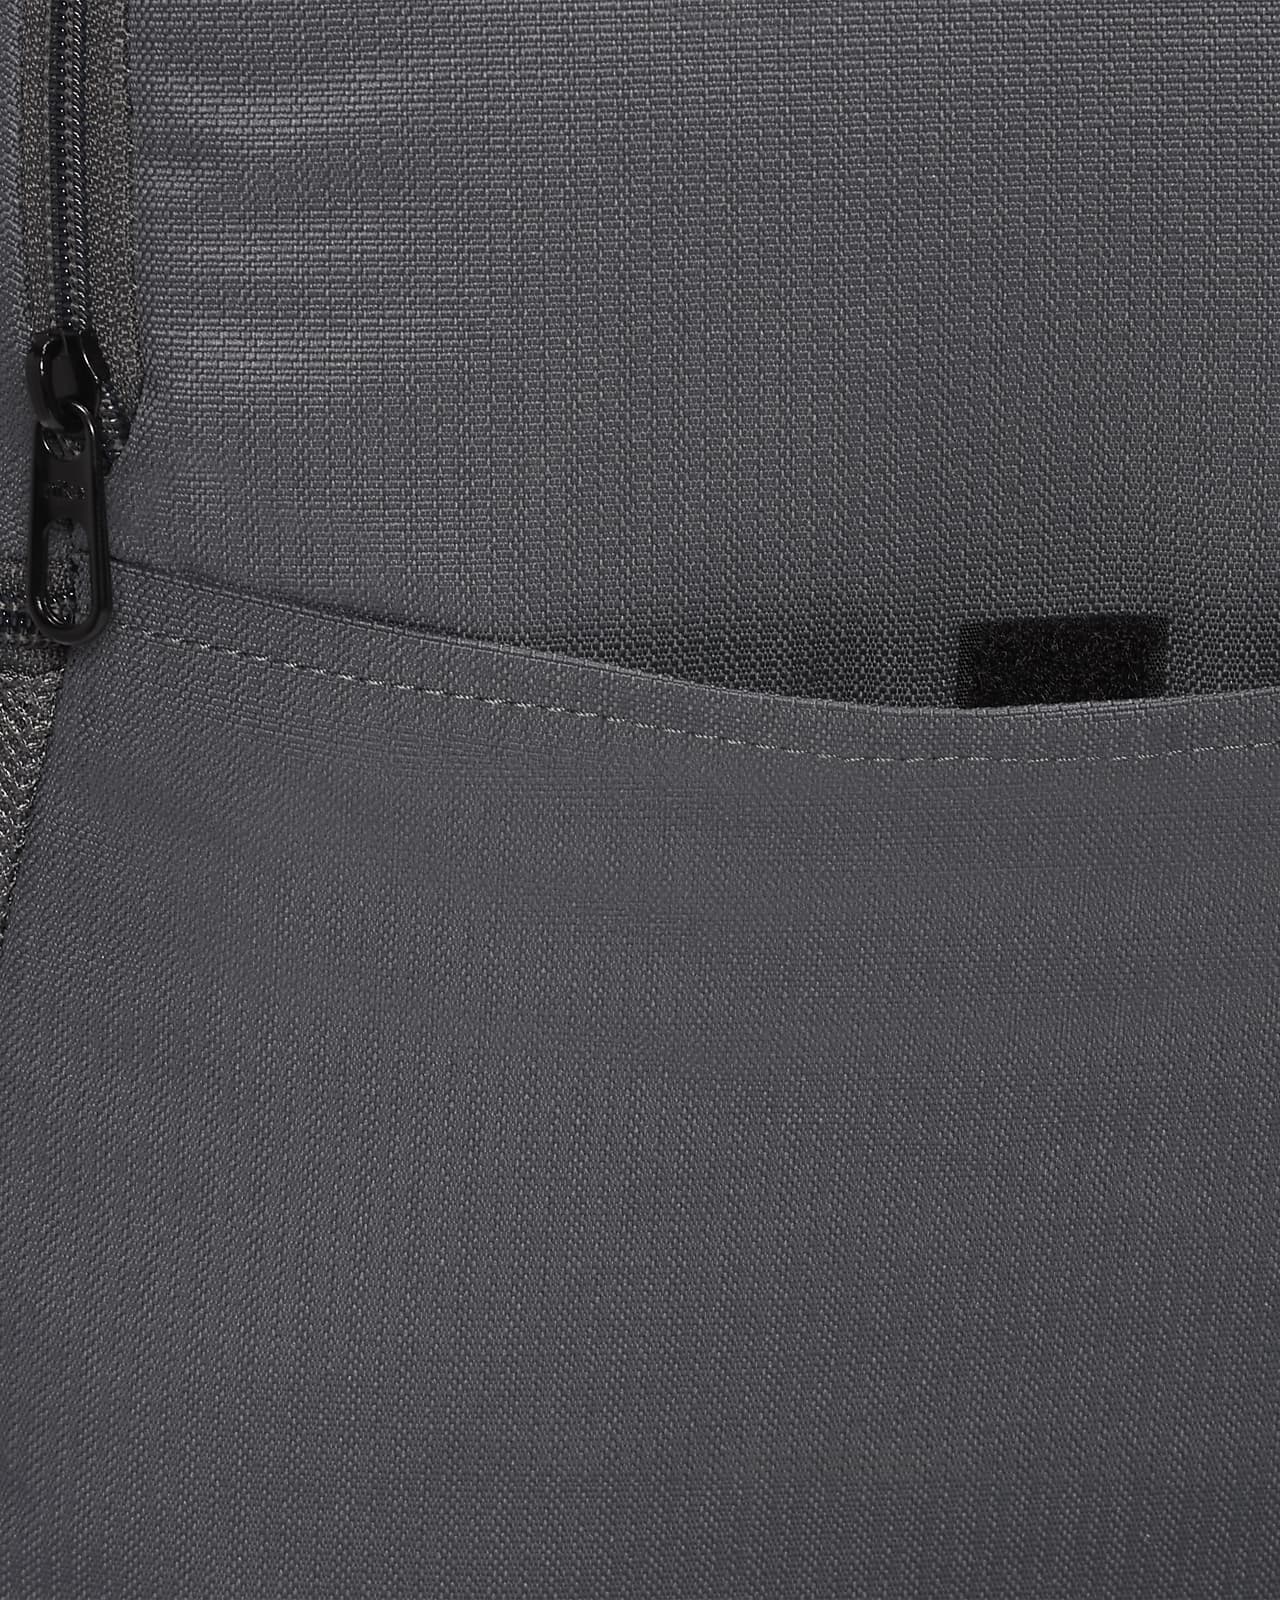 Nike Brasilia Winterized Graphic Training Backpack Black (Large, 24 L)